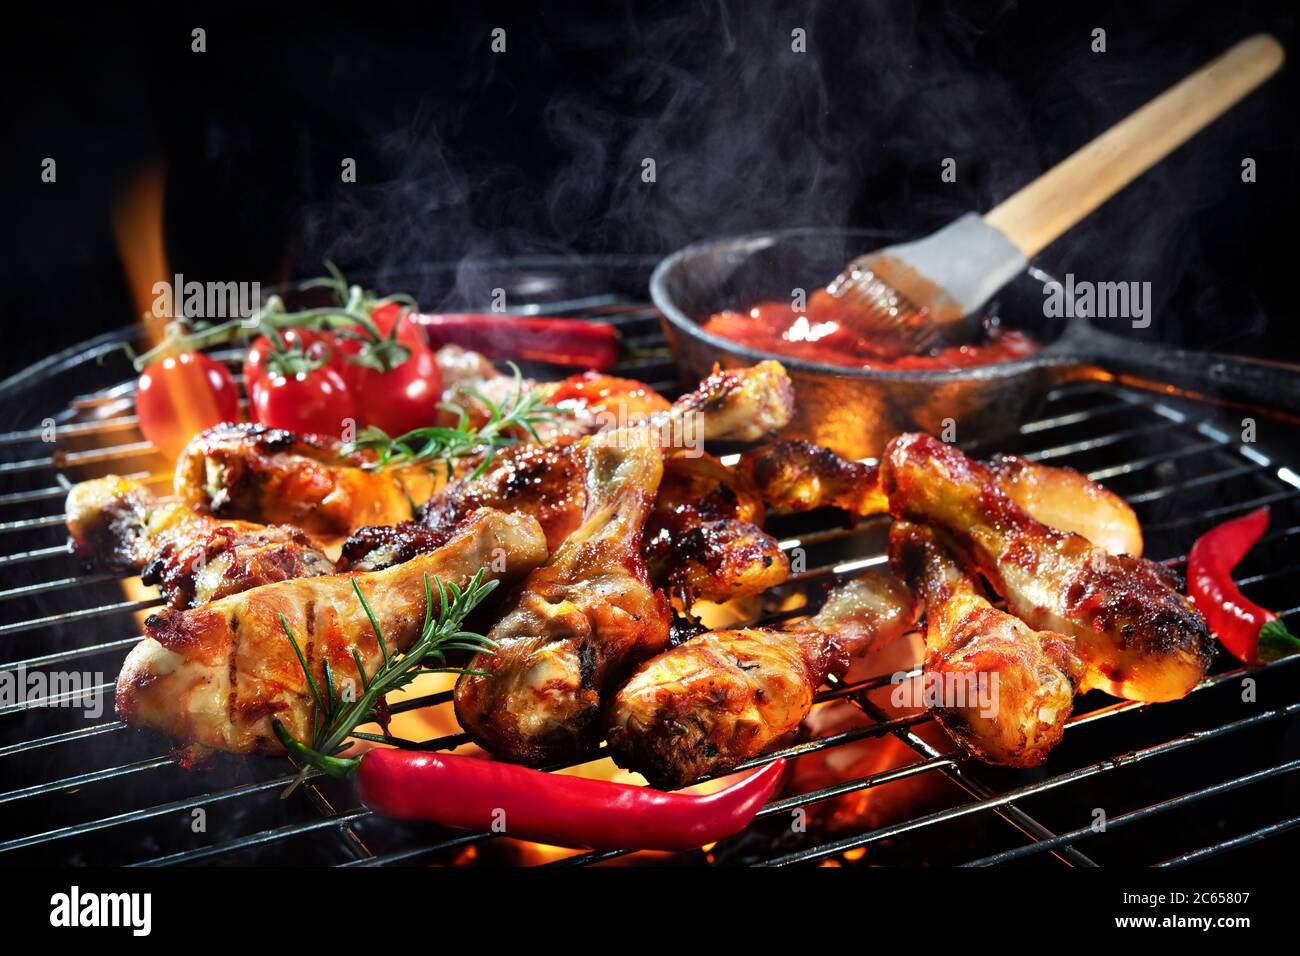 Des cuisses de poulet grillées ou des pilons de poulet sur le barbecue chaud flamboyant avec de la fumée sur fond sombre Banque D'Images